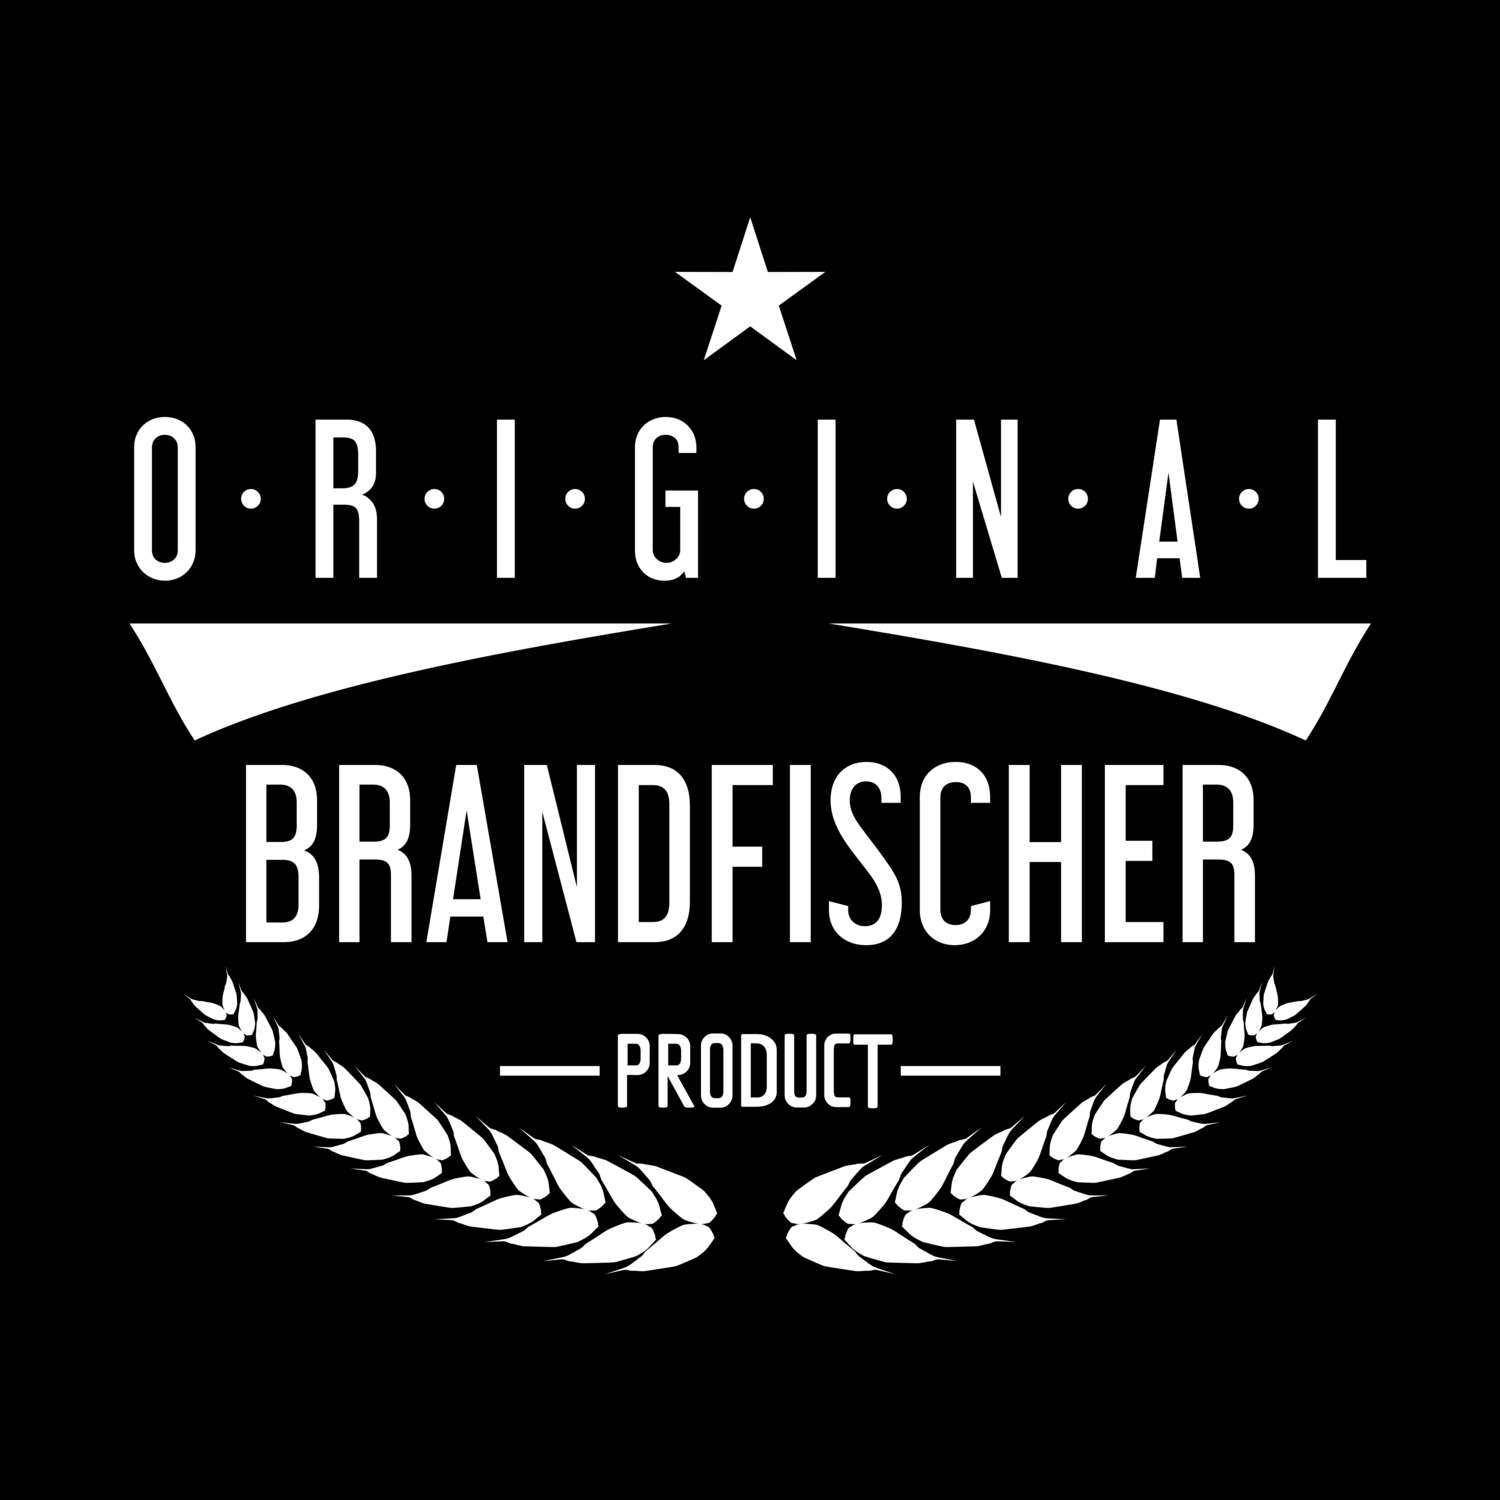 Brandfischer T-Shirt »Original Product«